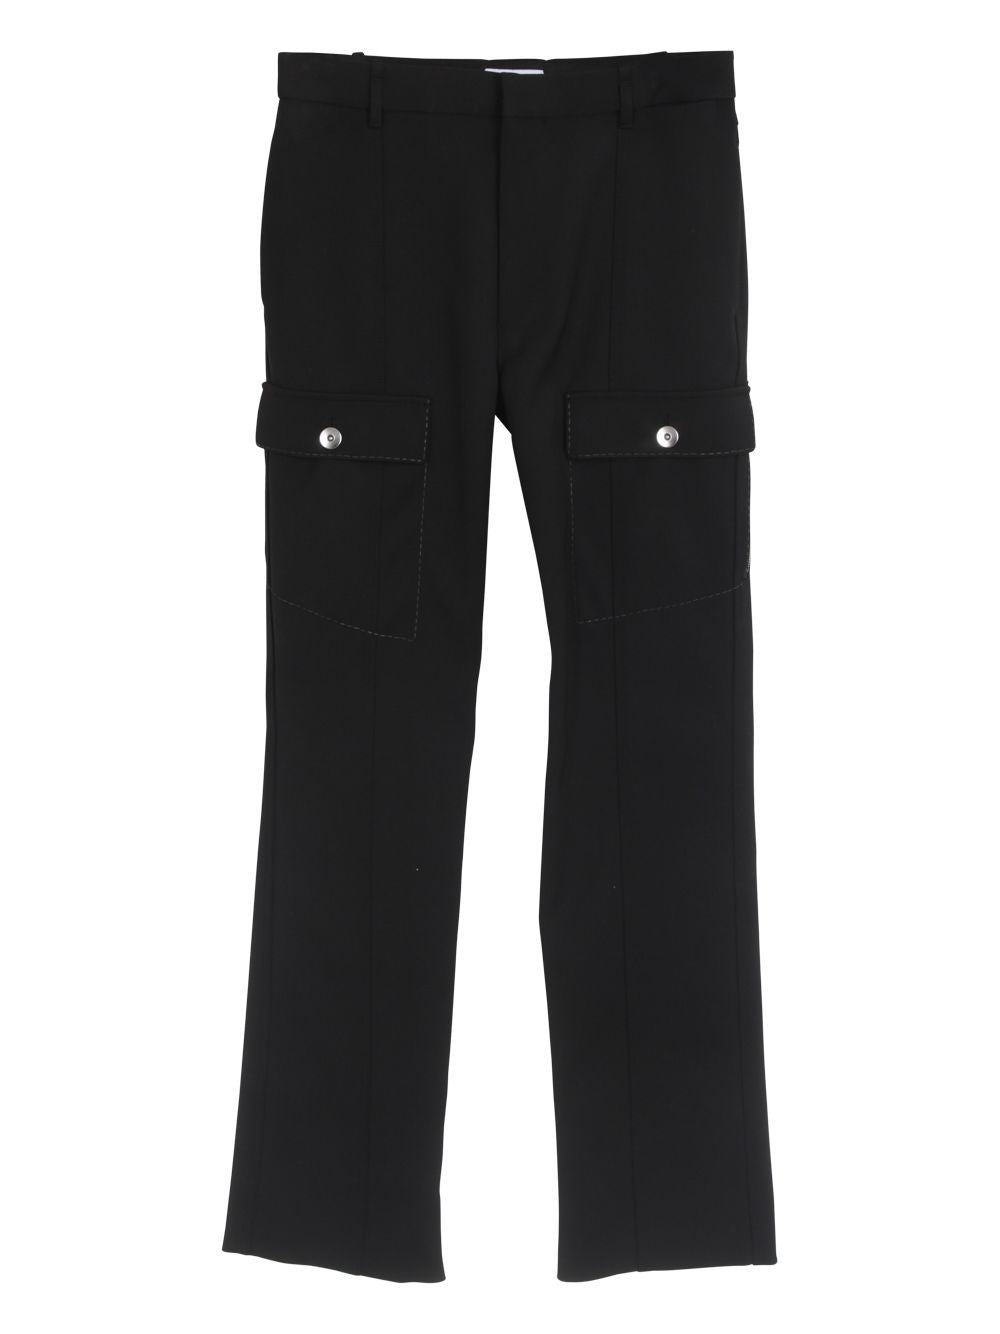 BOTTEGA VENETA Black Slit Hem Cargo Pants for Women - FW21 Collection